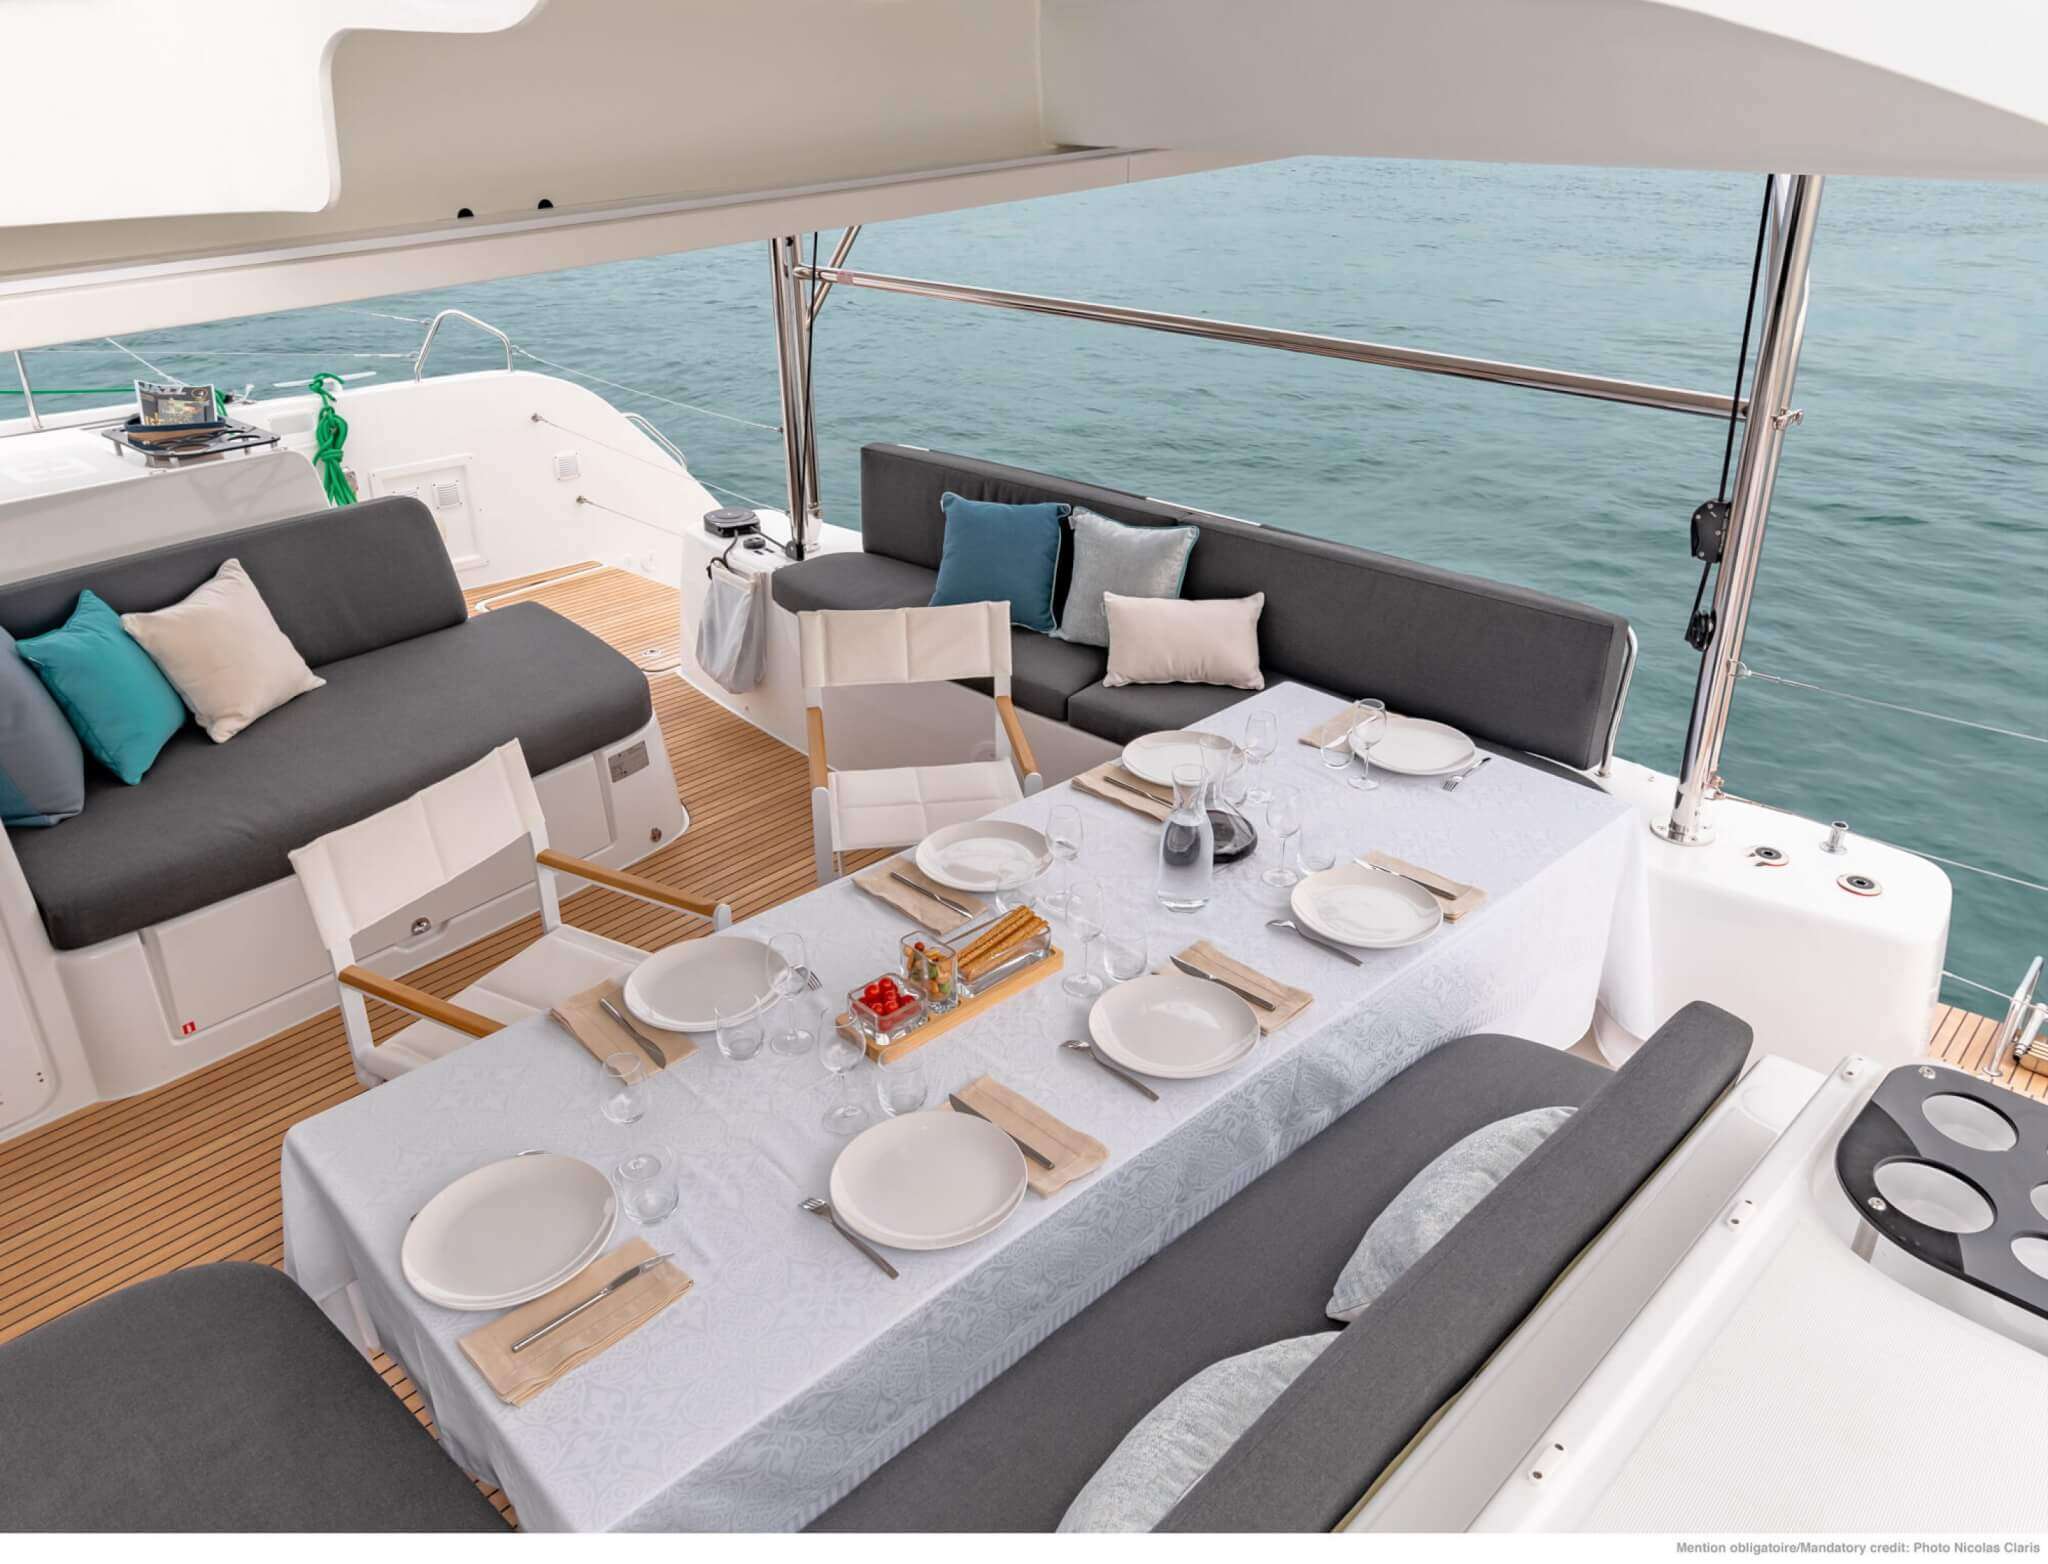 PEPE - Yacht Charter Rijeka & Boat hire in Croatia 2